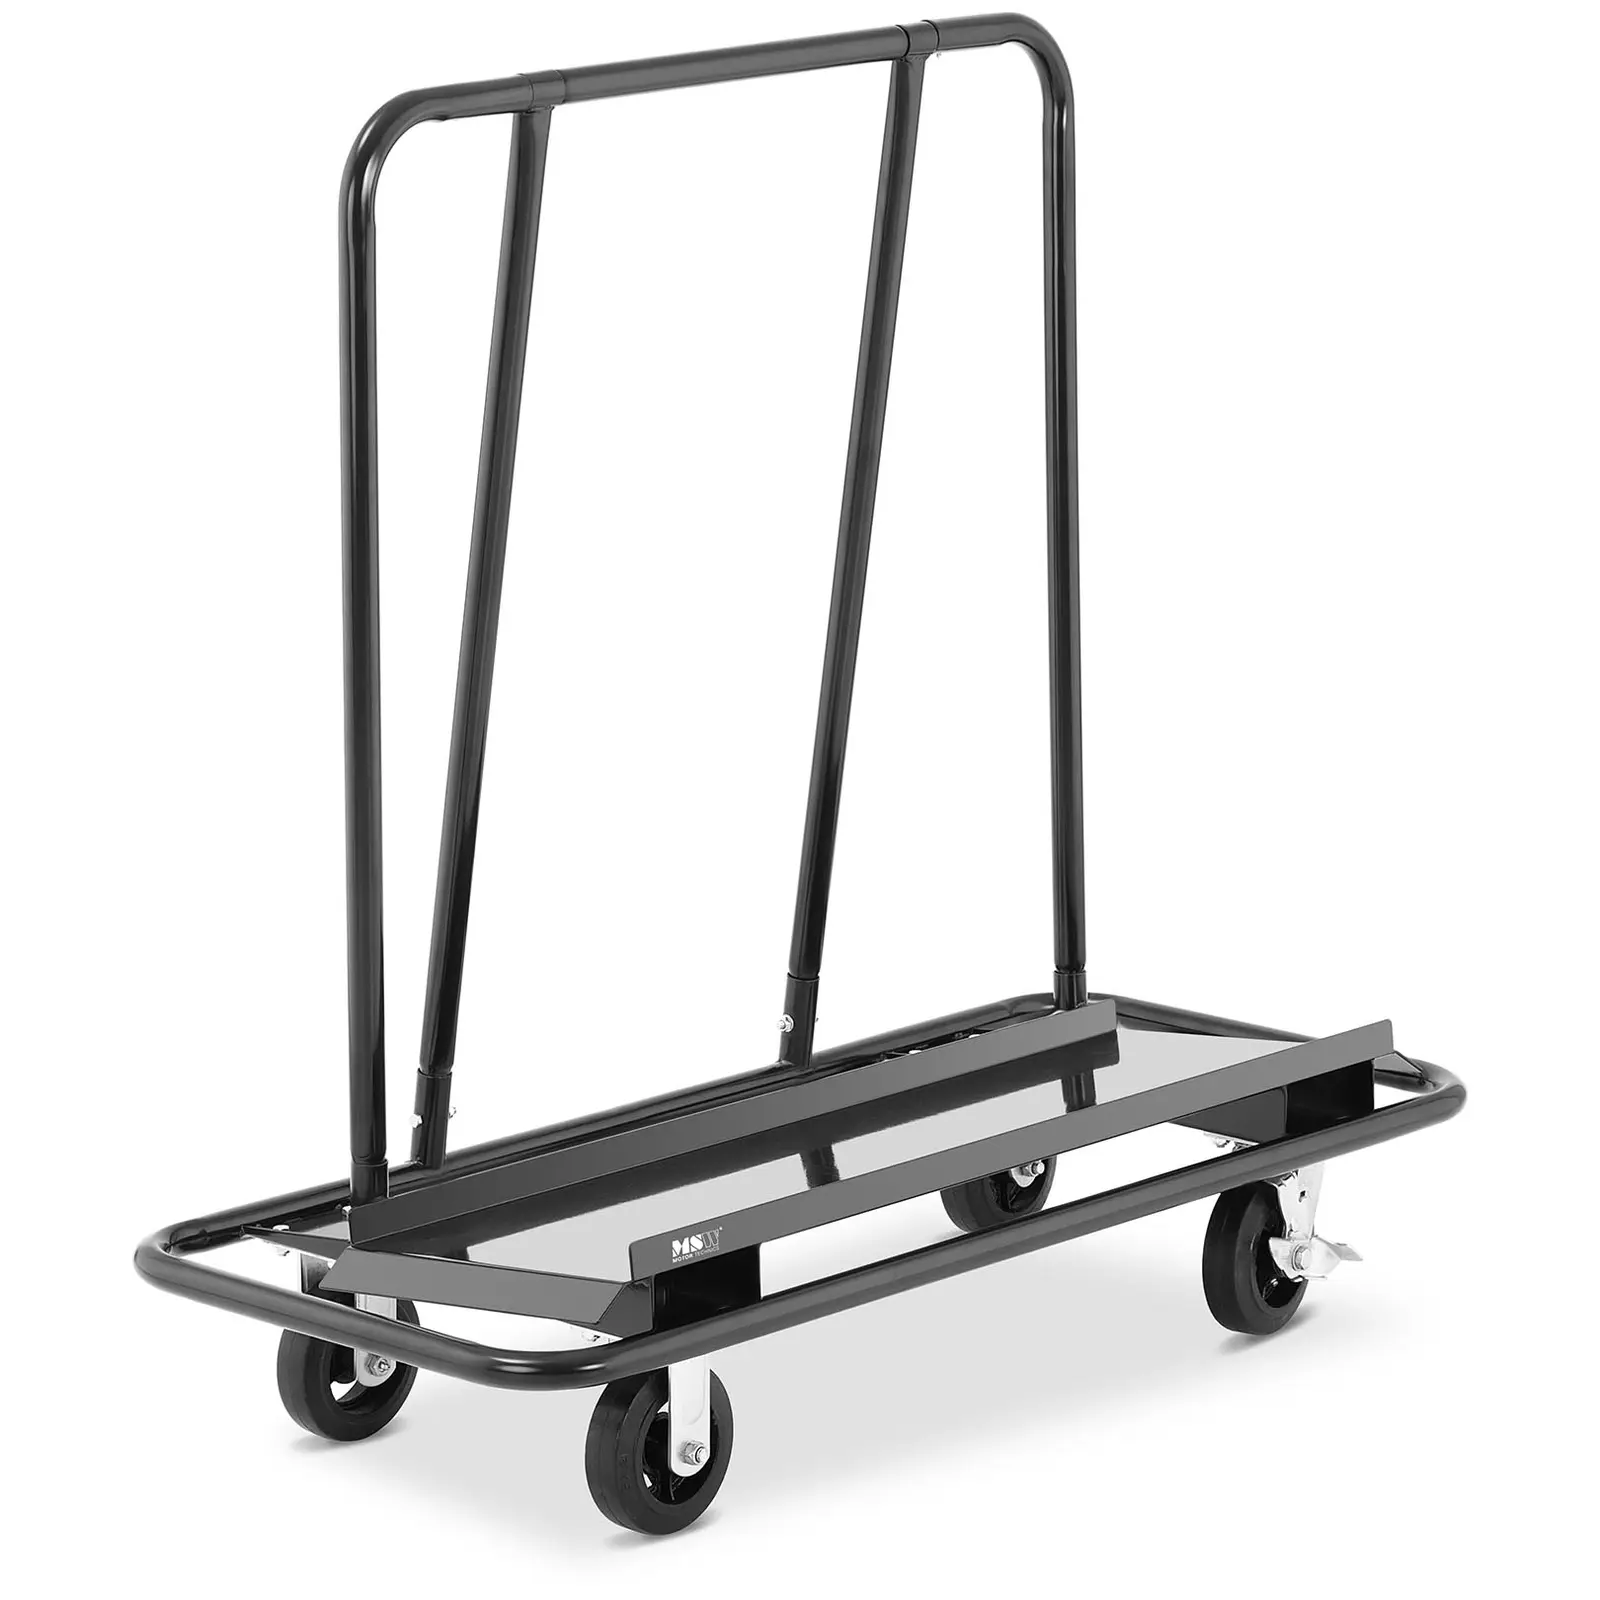 Platforminis vežimėlis - sausos konstrukcijos vežimėlis - iki 500 kg